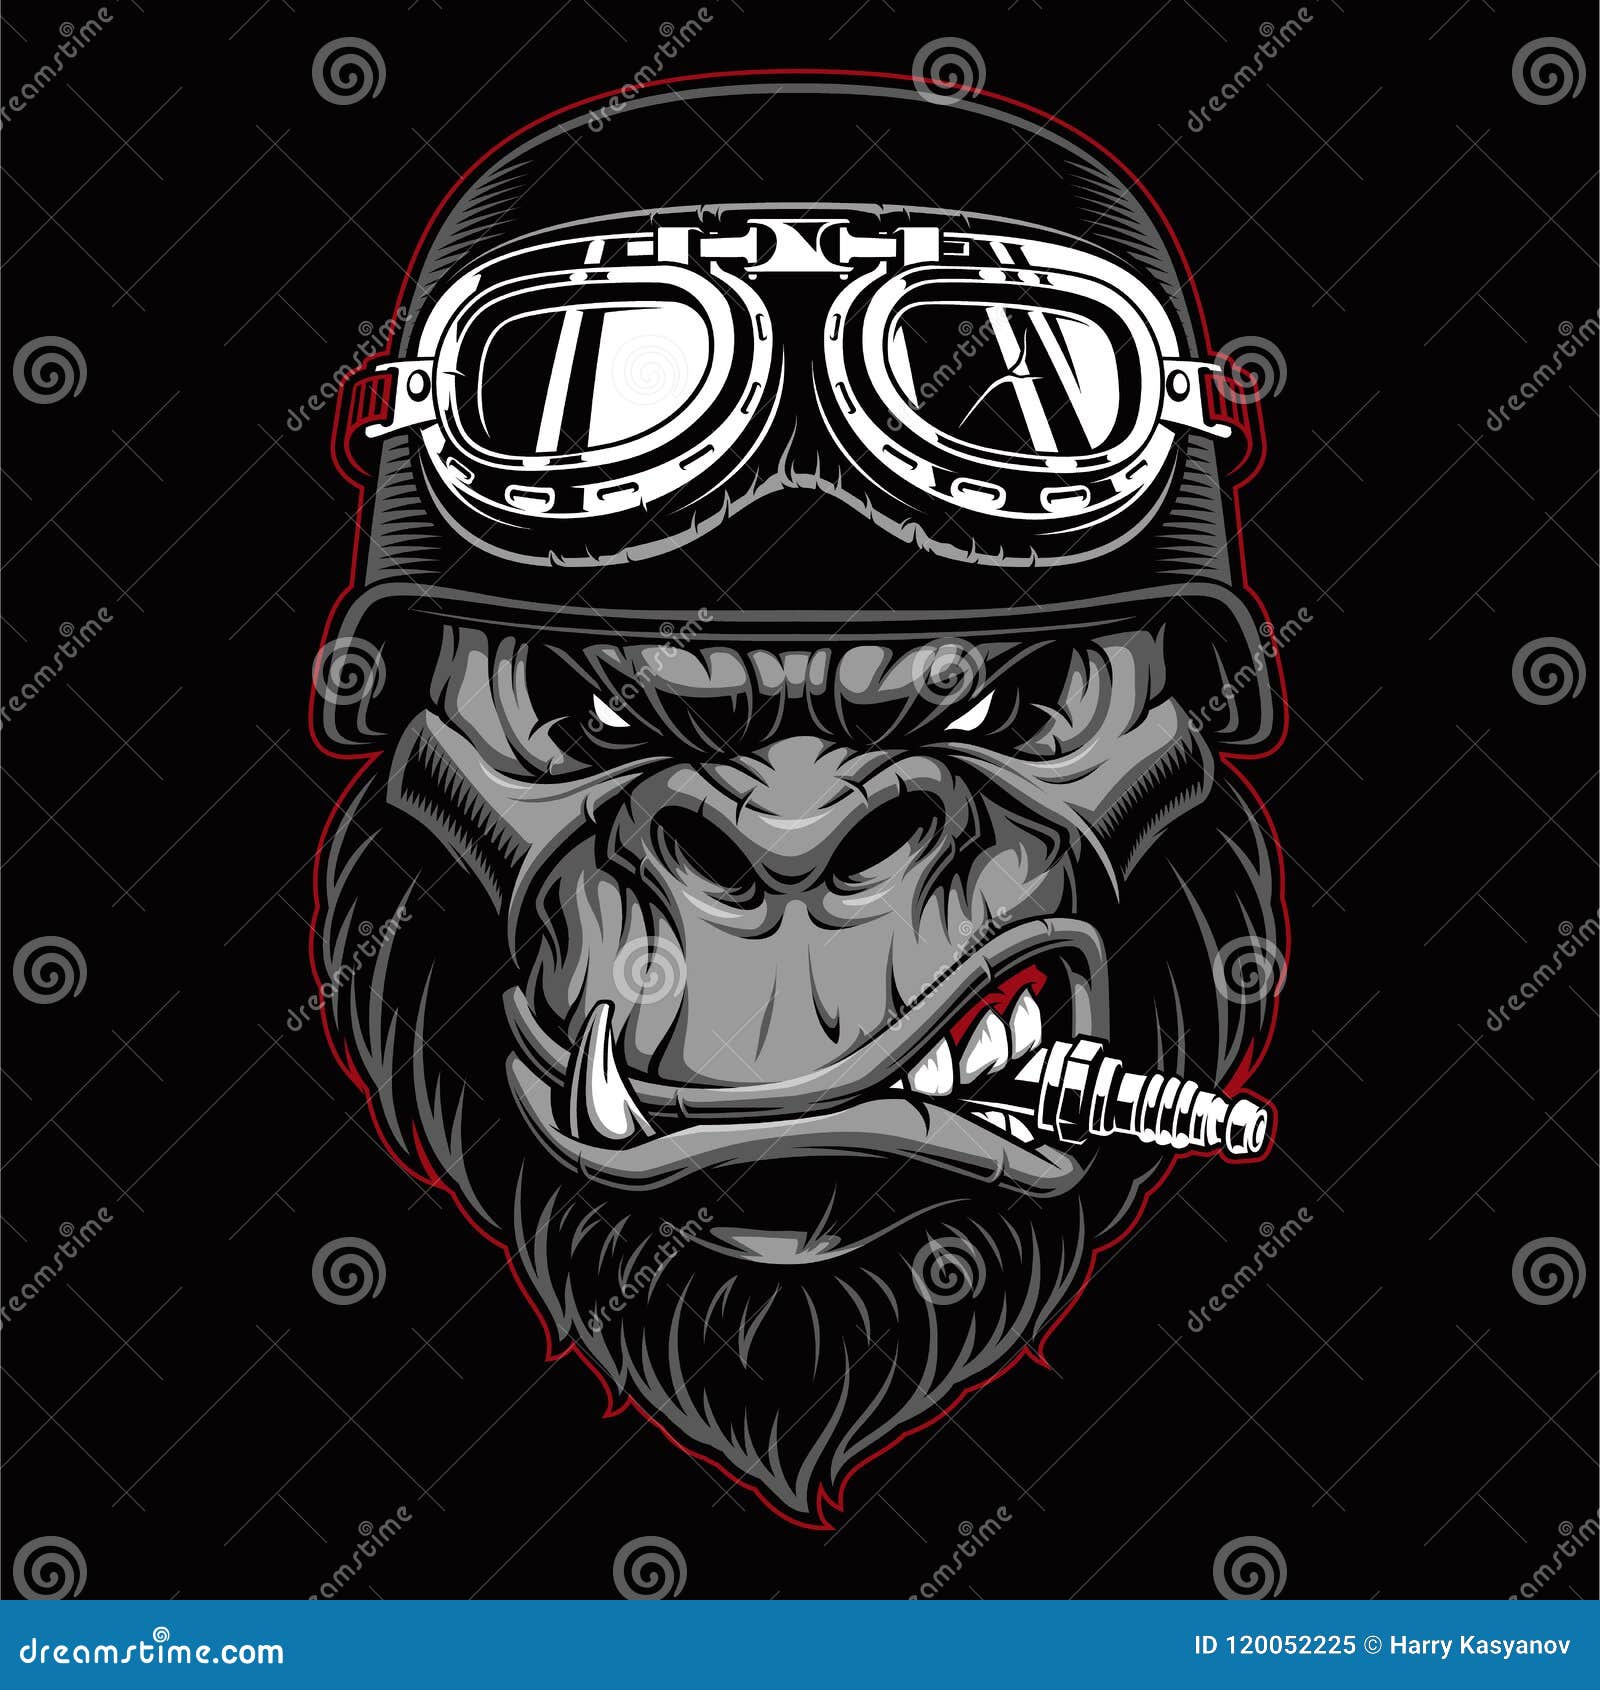 gorilla biker mascot.